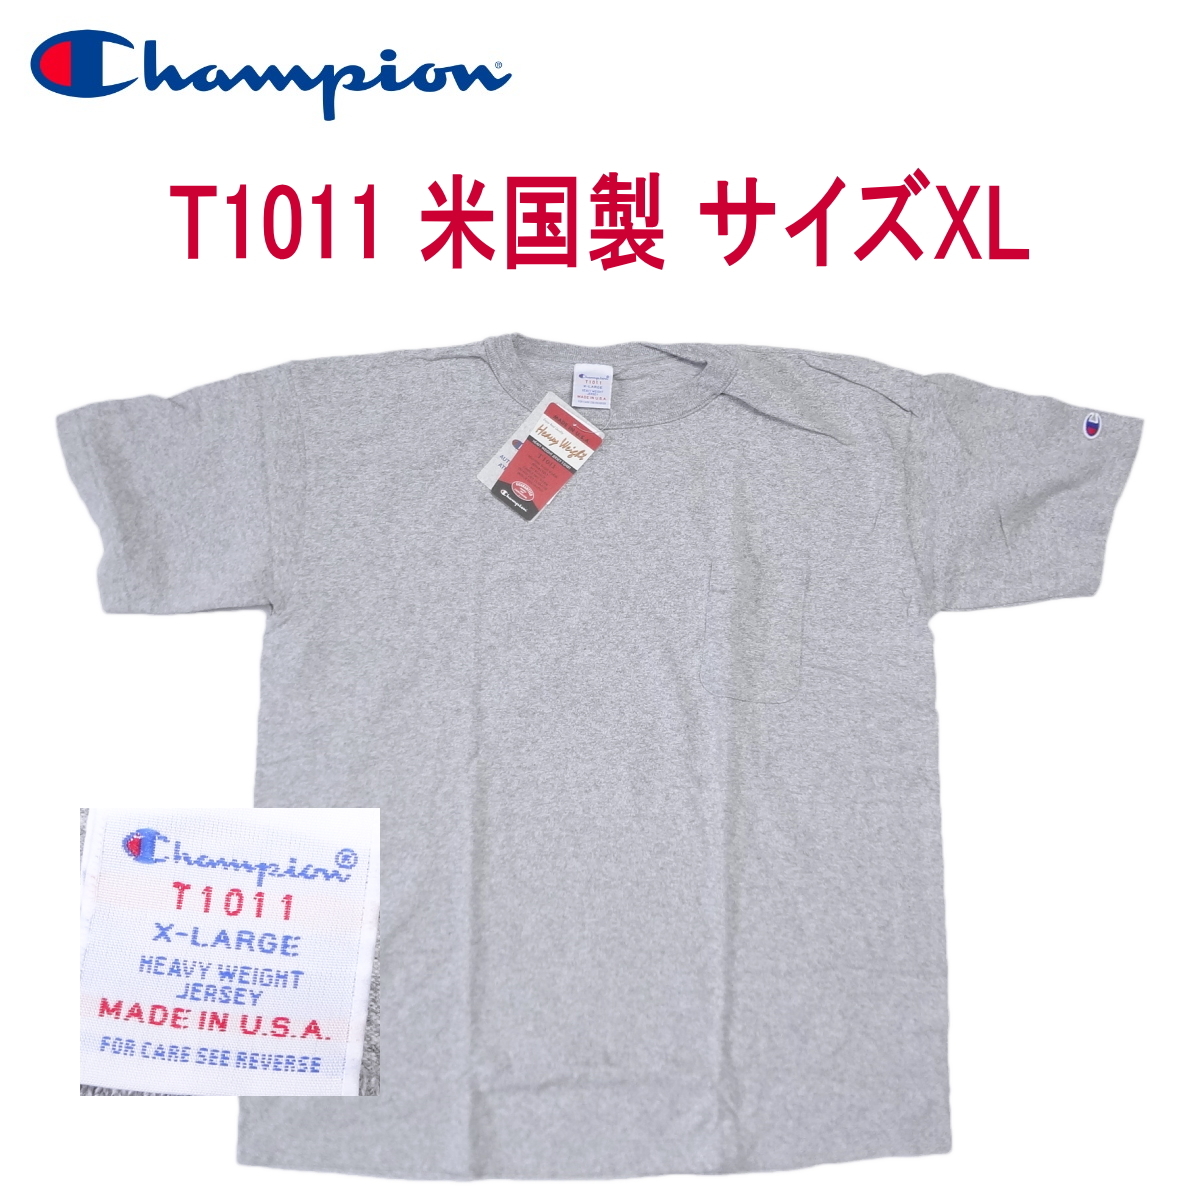 チャンピオン T1011 ティーテンイレブン サイズXL C5-B303 Champion 米国製 MADE IN THE USA_画像1